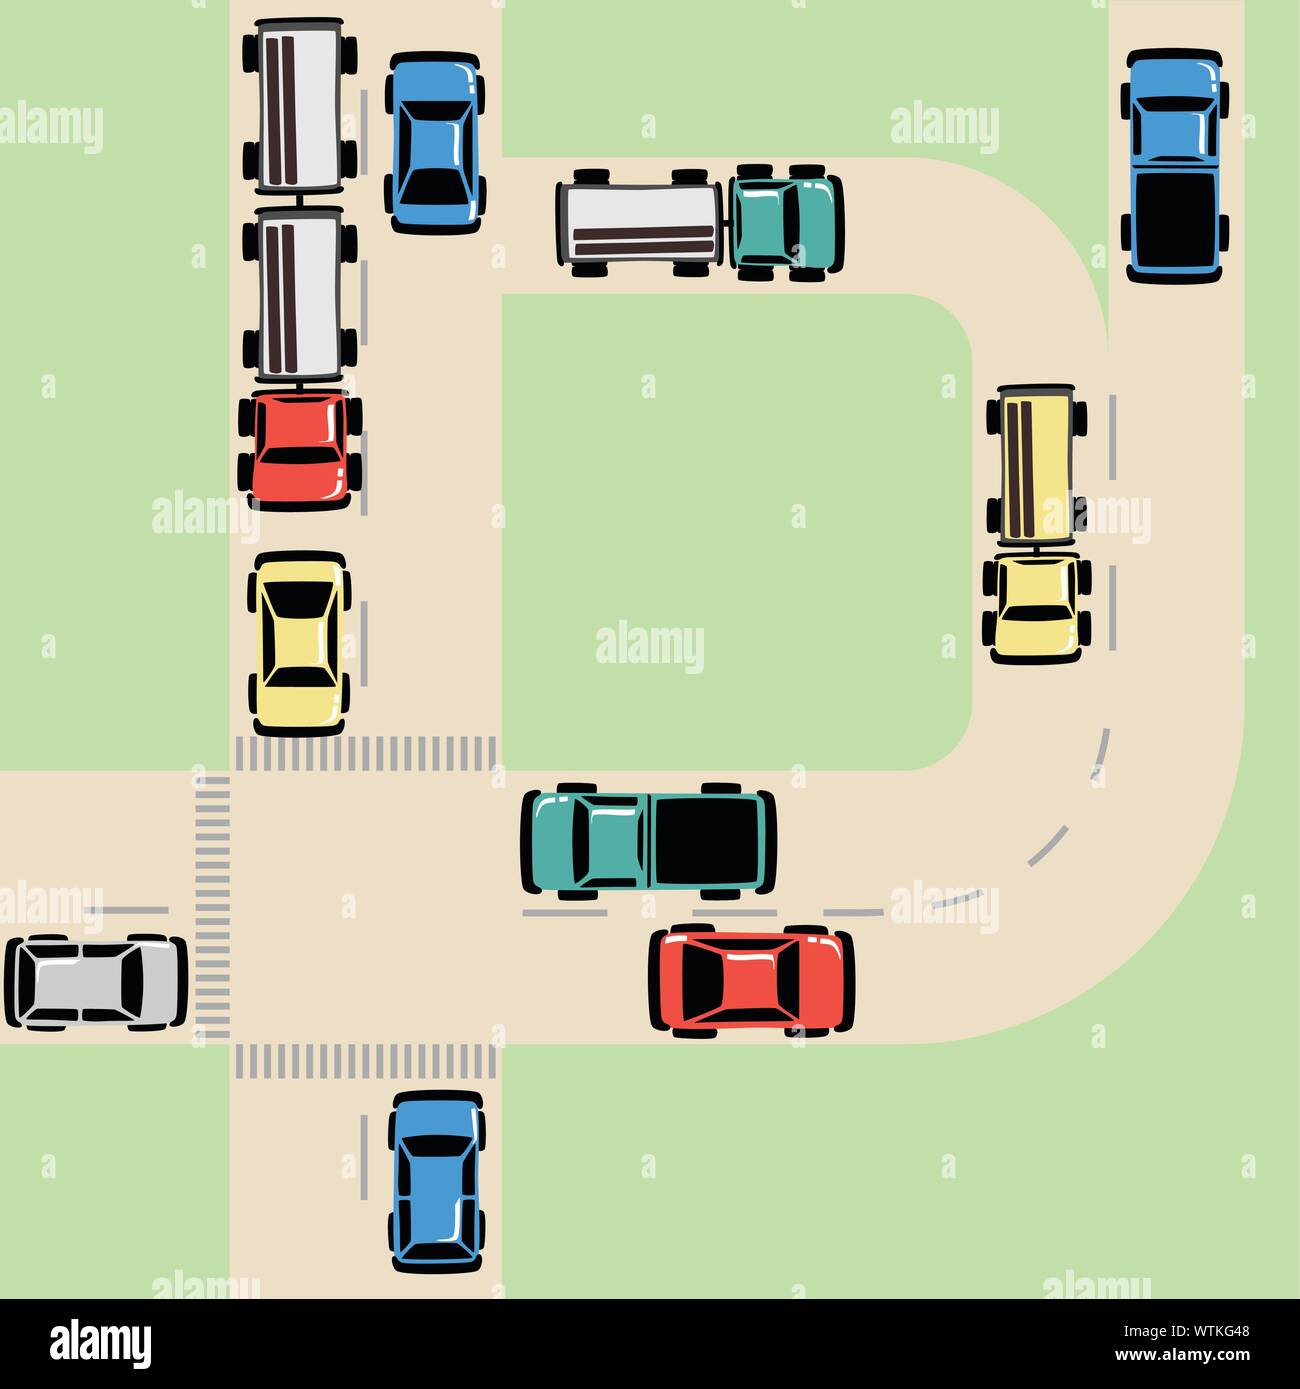 Carte de trafic avec des voitures et camions sur route à l'intersection, regroupées et stratifiés Illustration de Vecteur